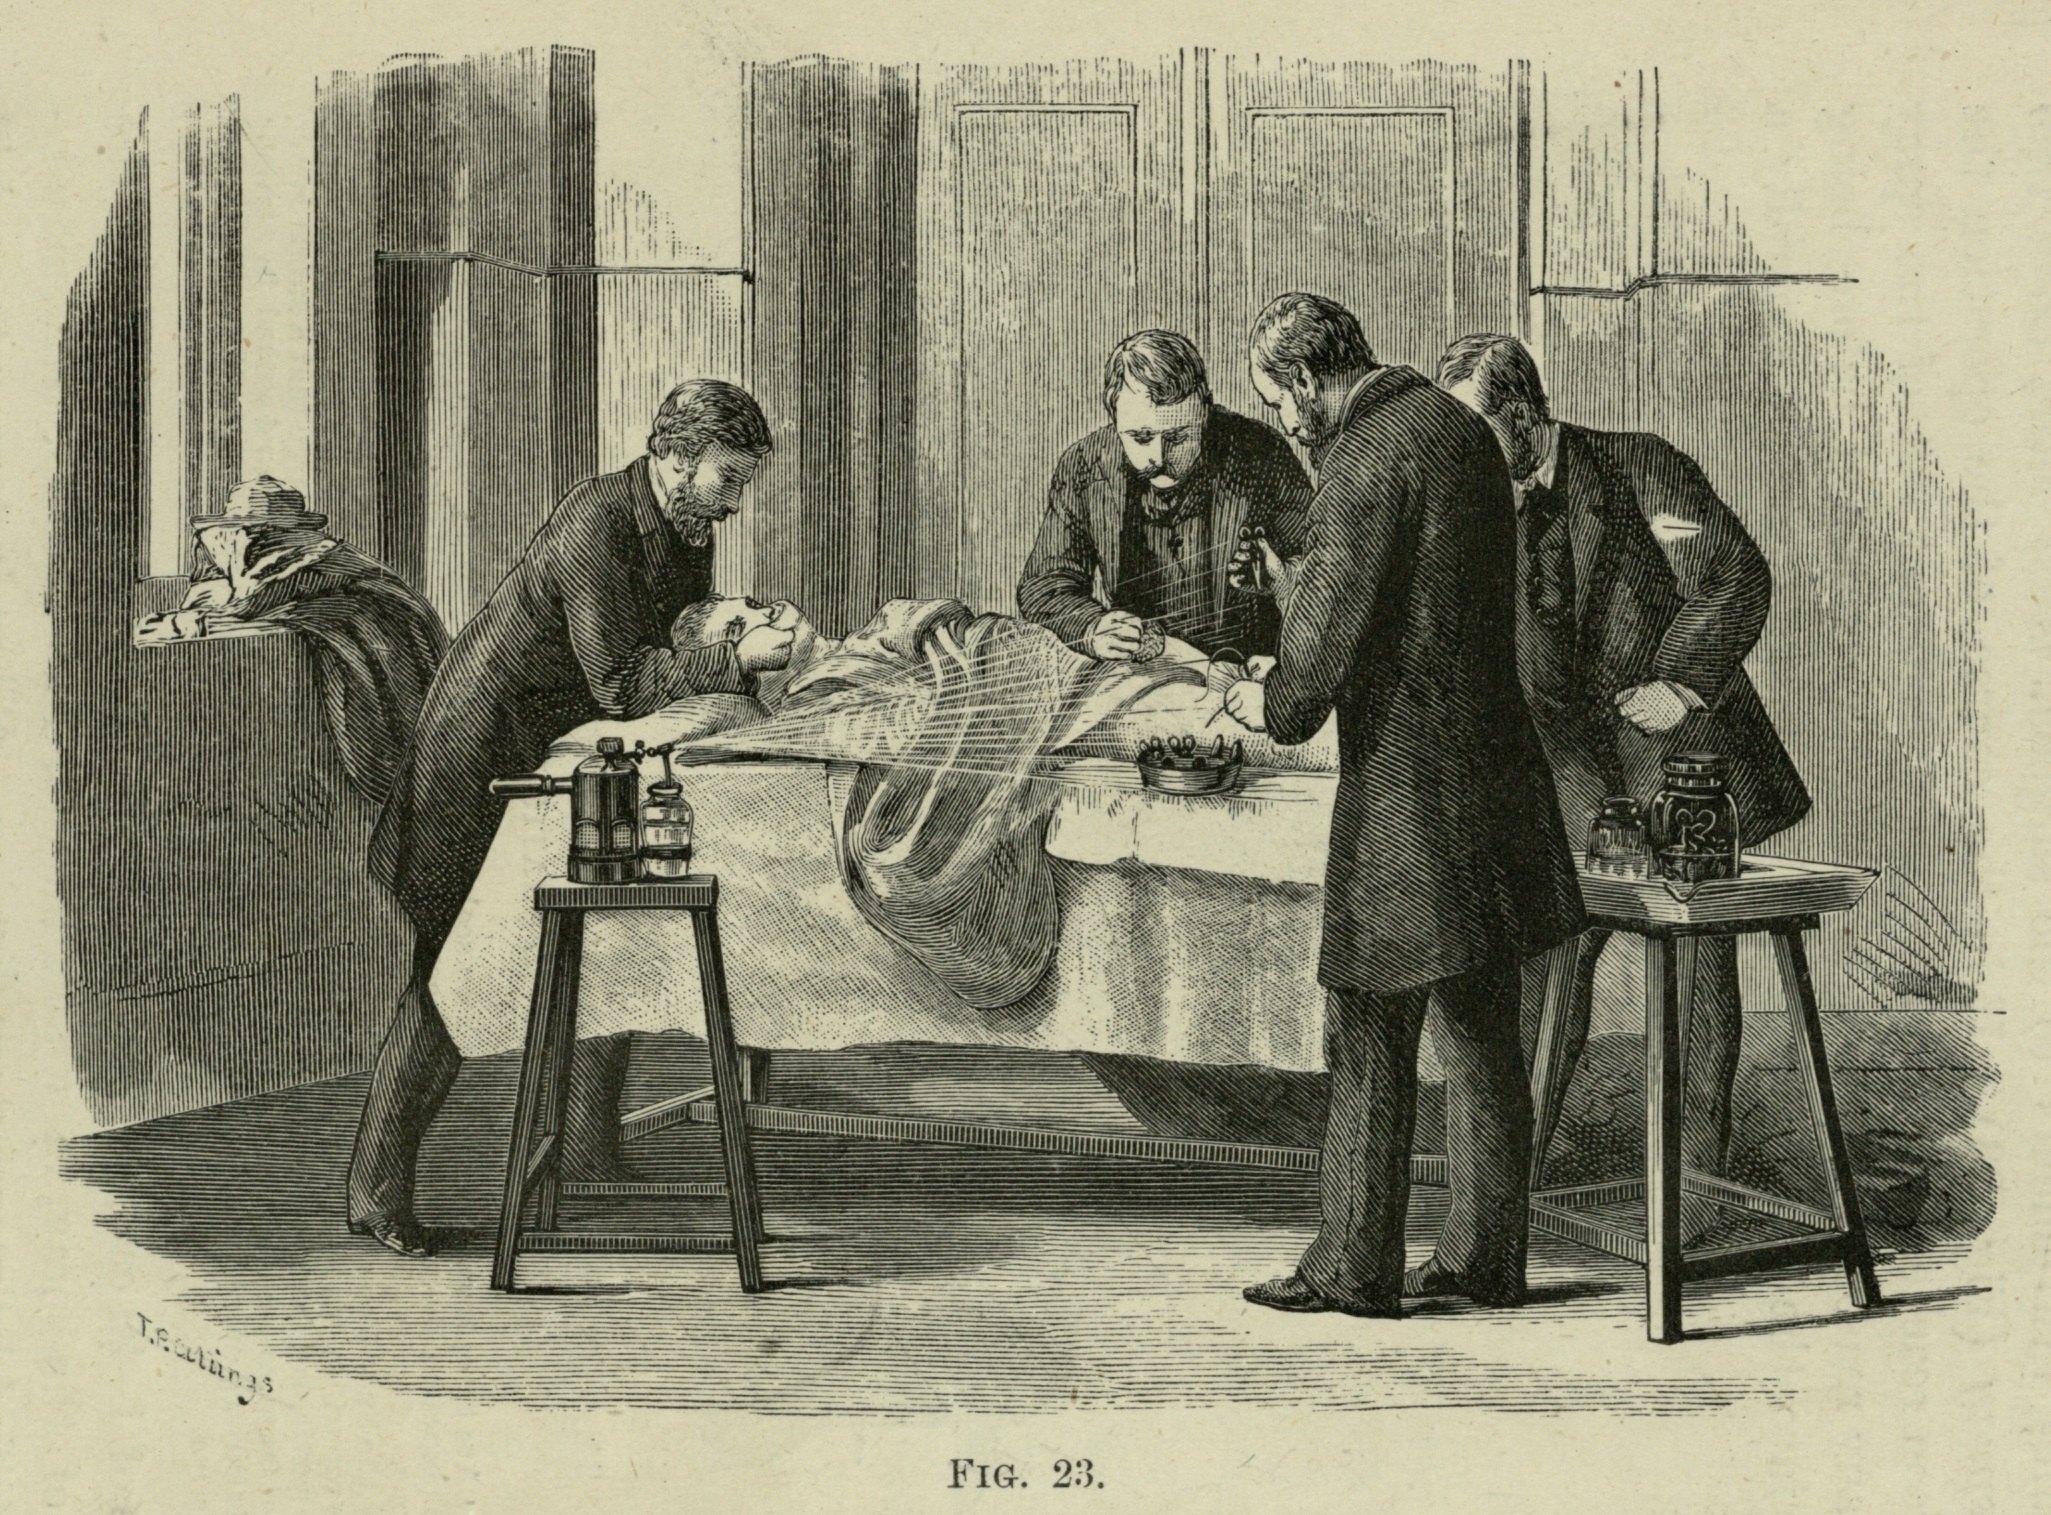 Ilustração em preto e branco de quatro homens, em pé, fazendo uma cirurgia em um paciente deitado em uma cama.